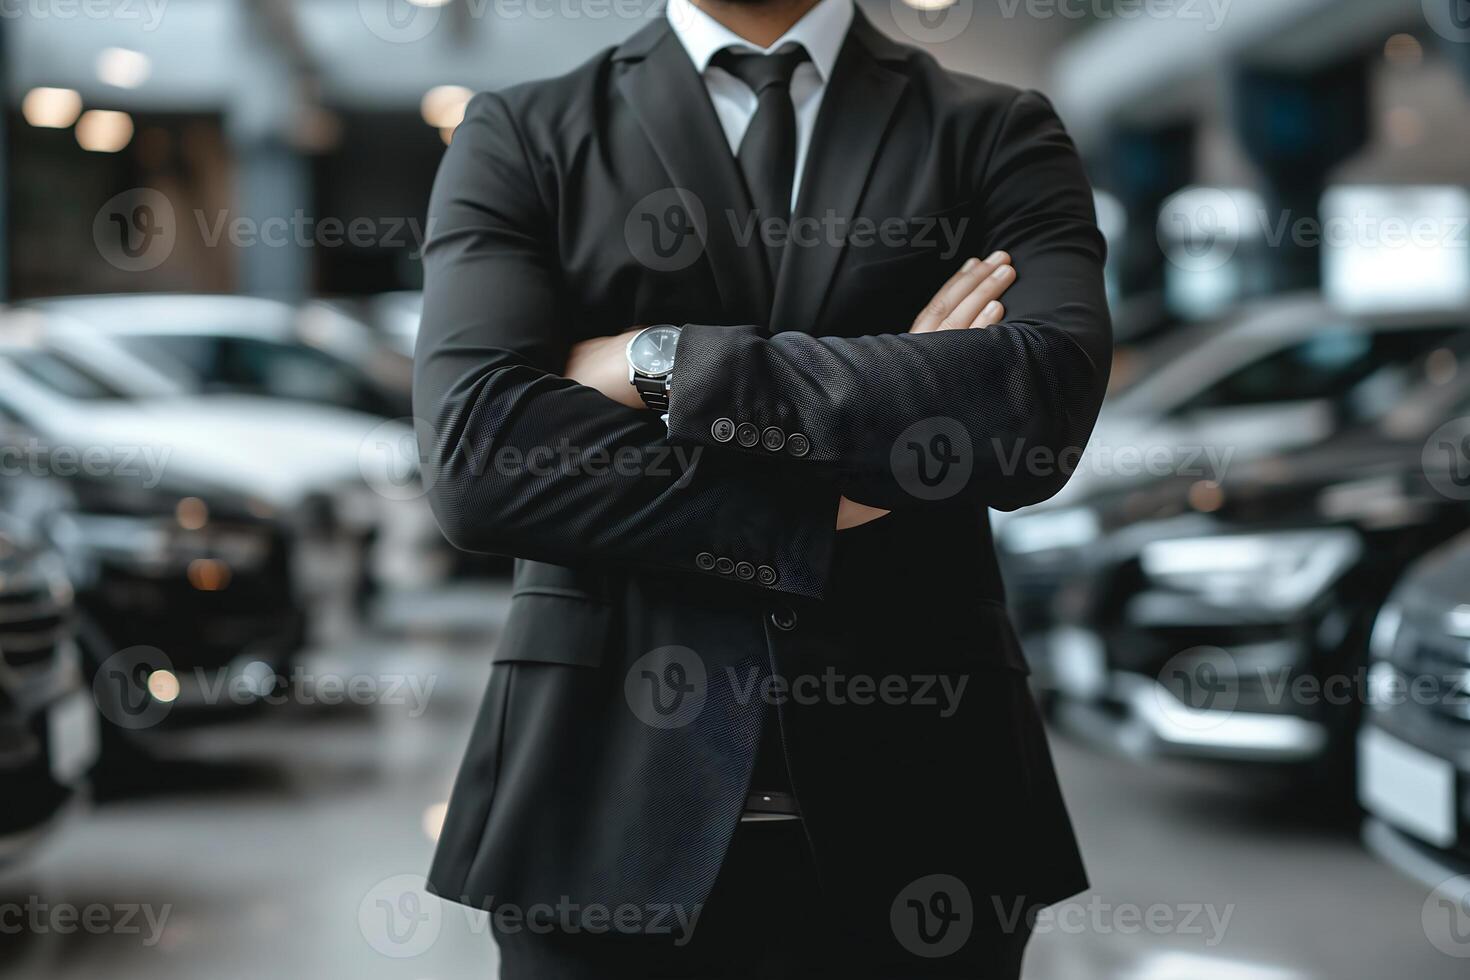 närbild affärsman bär en svart kostym stående inuti en bil utställningslokal foto